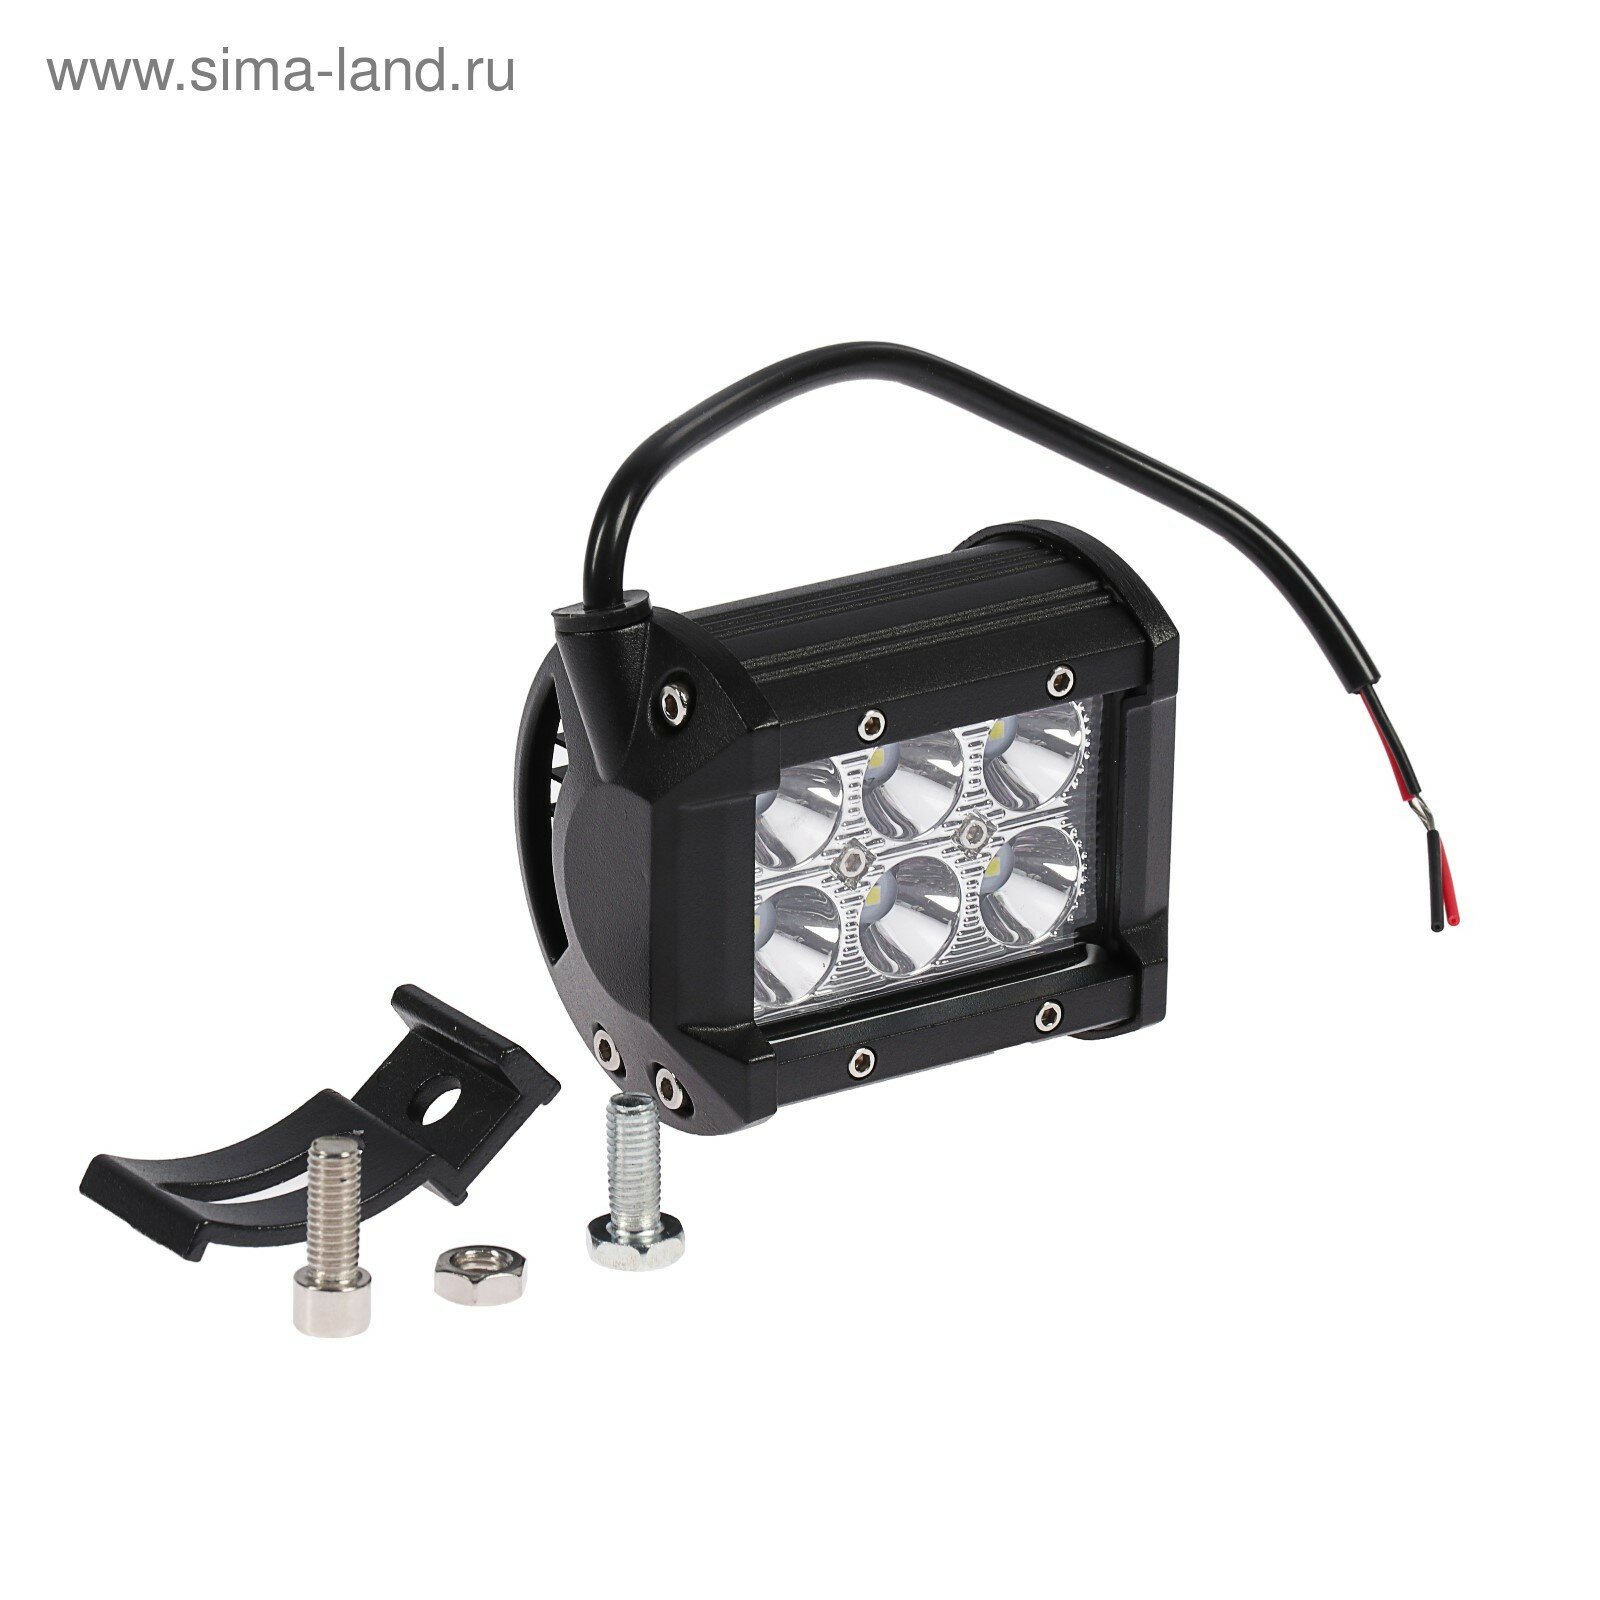 Противотуманная фара 6 LED IP67 18 Вт 6000 К 12-24 В направленный свет (1шт.)